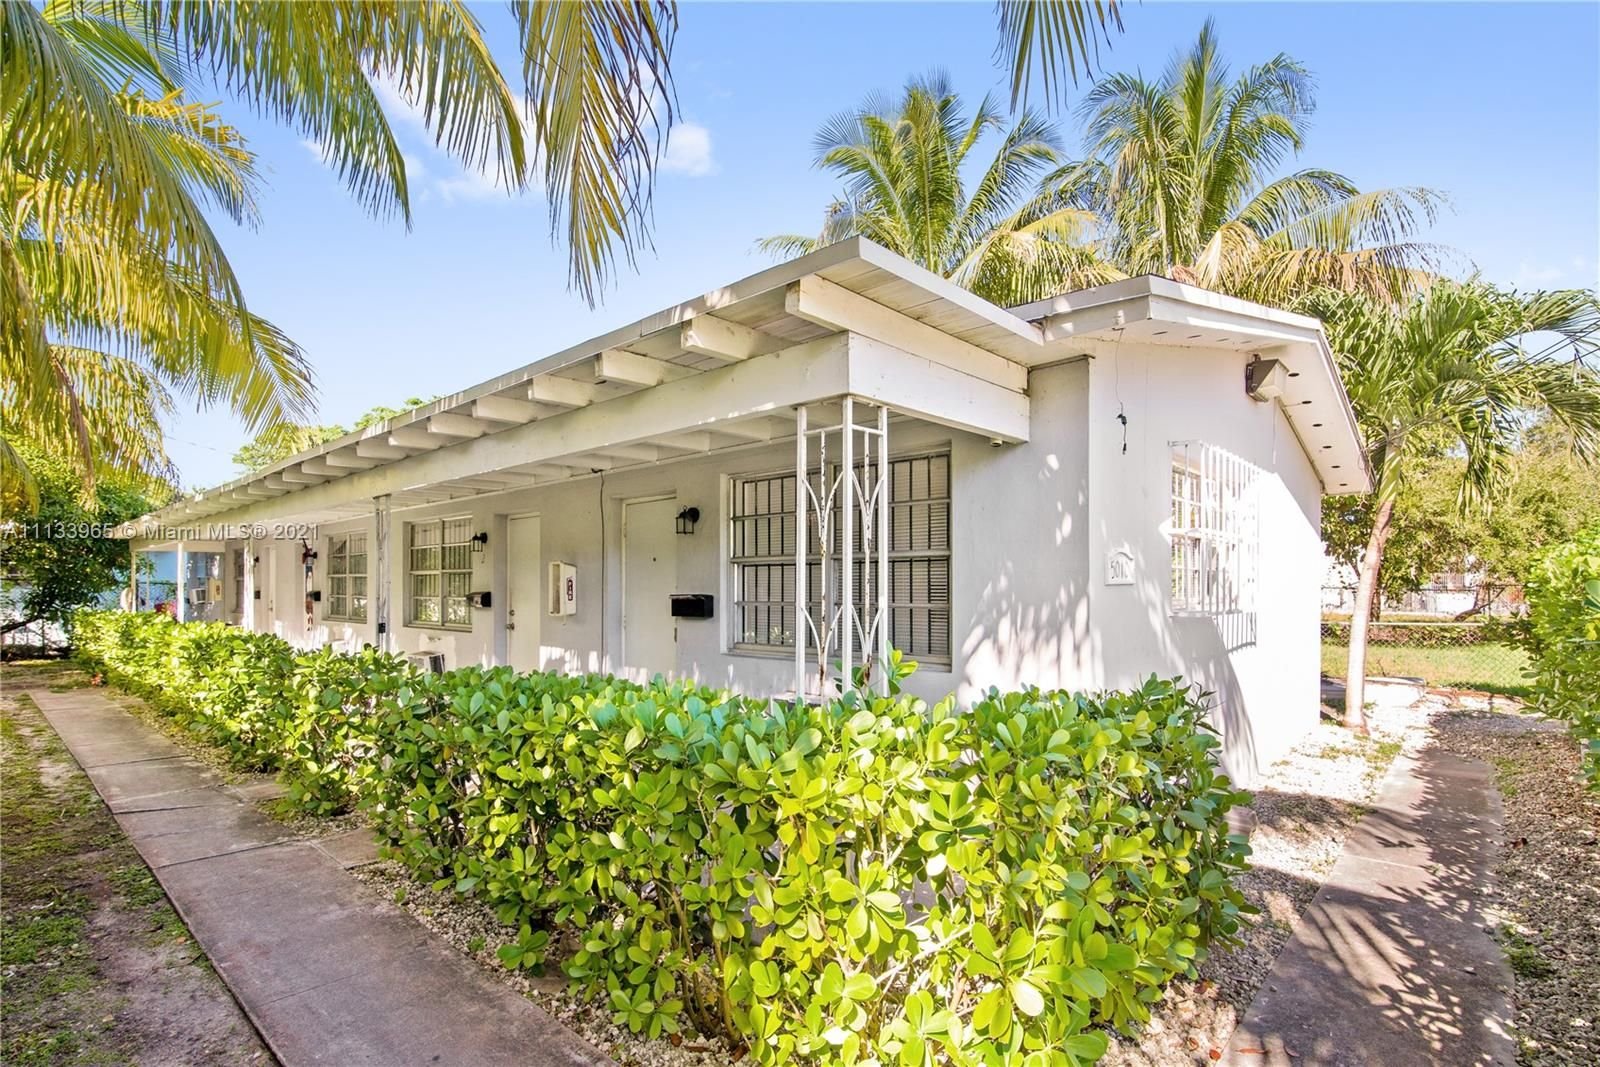 Real estate property located at 5010 2 Aven, Miami-Dade County, Miami, FL